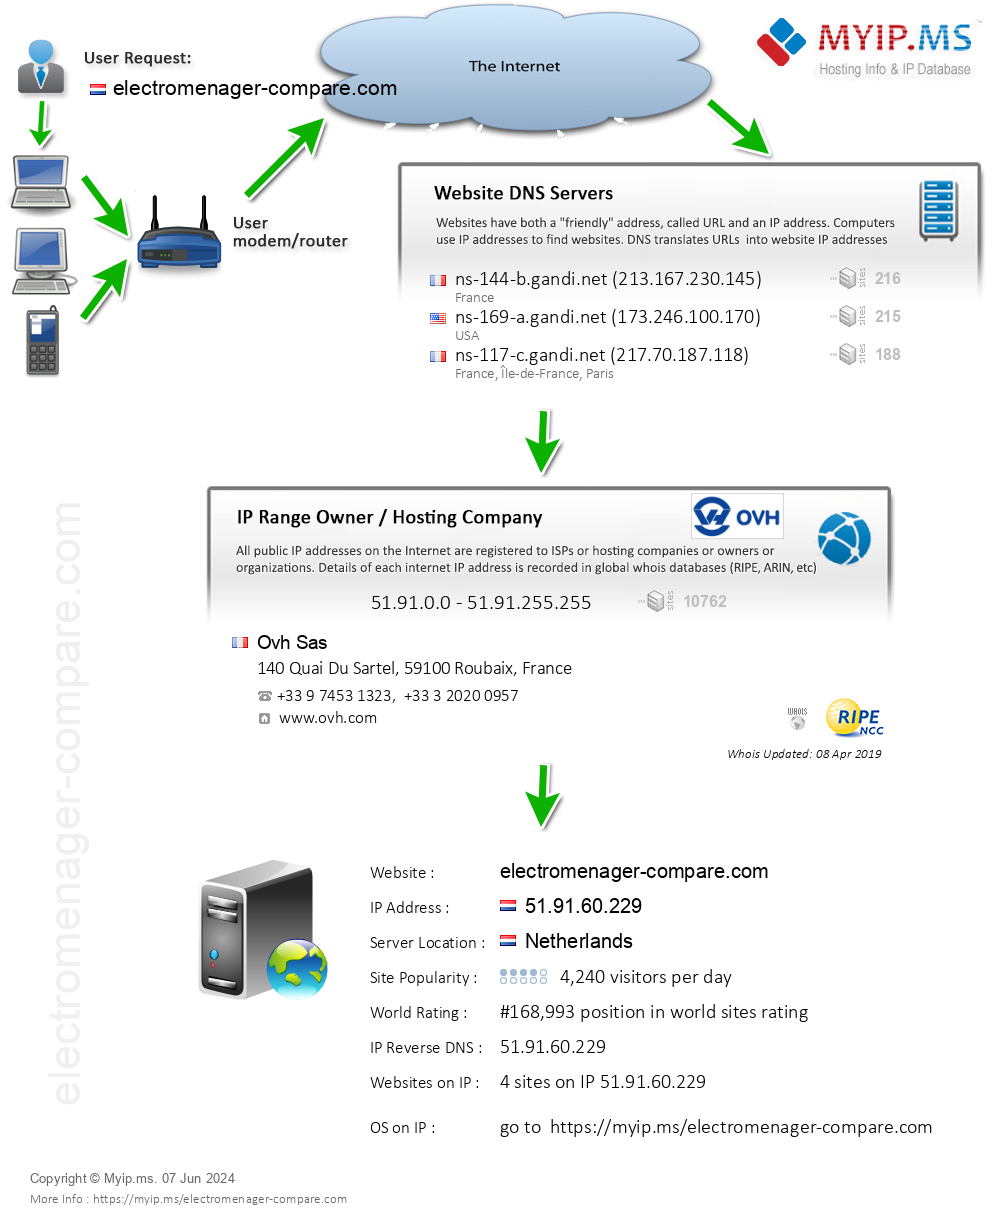 Electromenager-compare.com - Website Hosting Visual IP Diagram